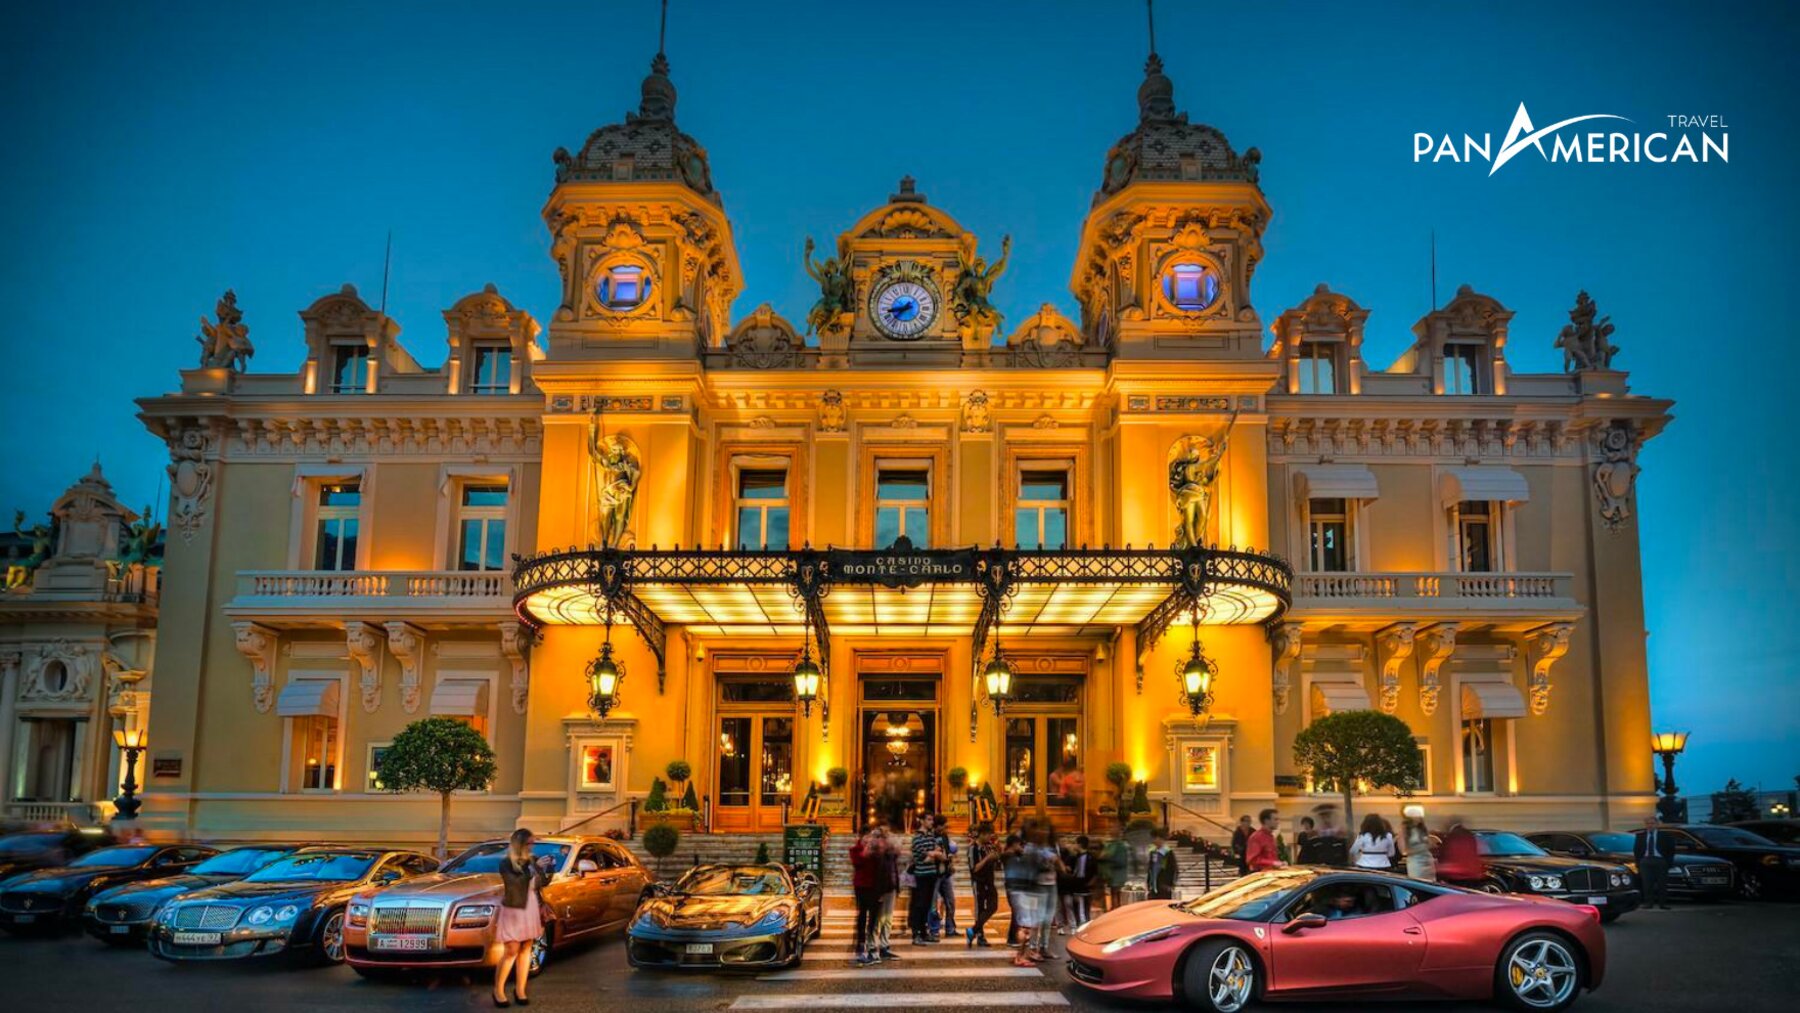 Giải mã đất nước Monaco, nơi “mỗi tấc đất là một tấc vàng” - Gallery Image